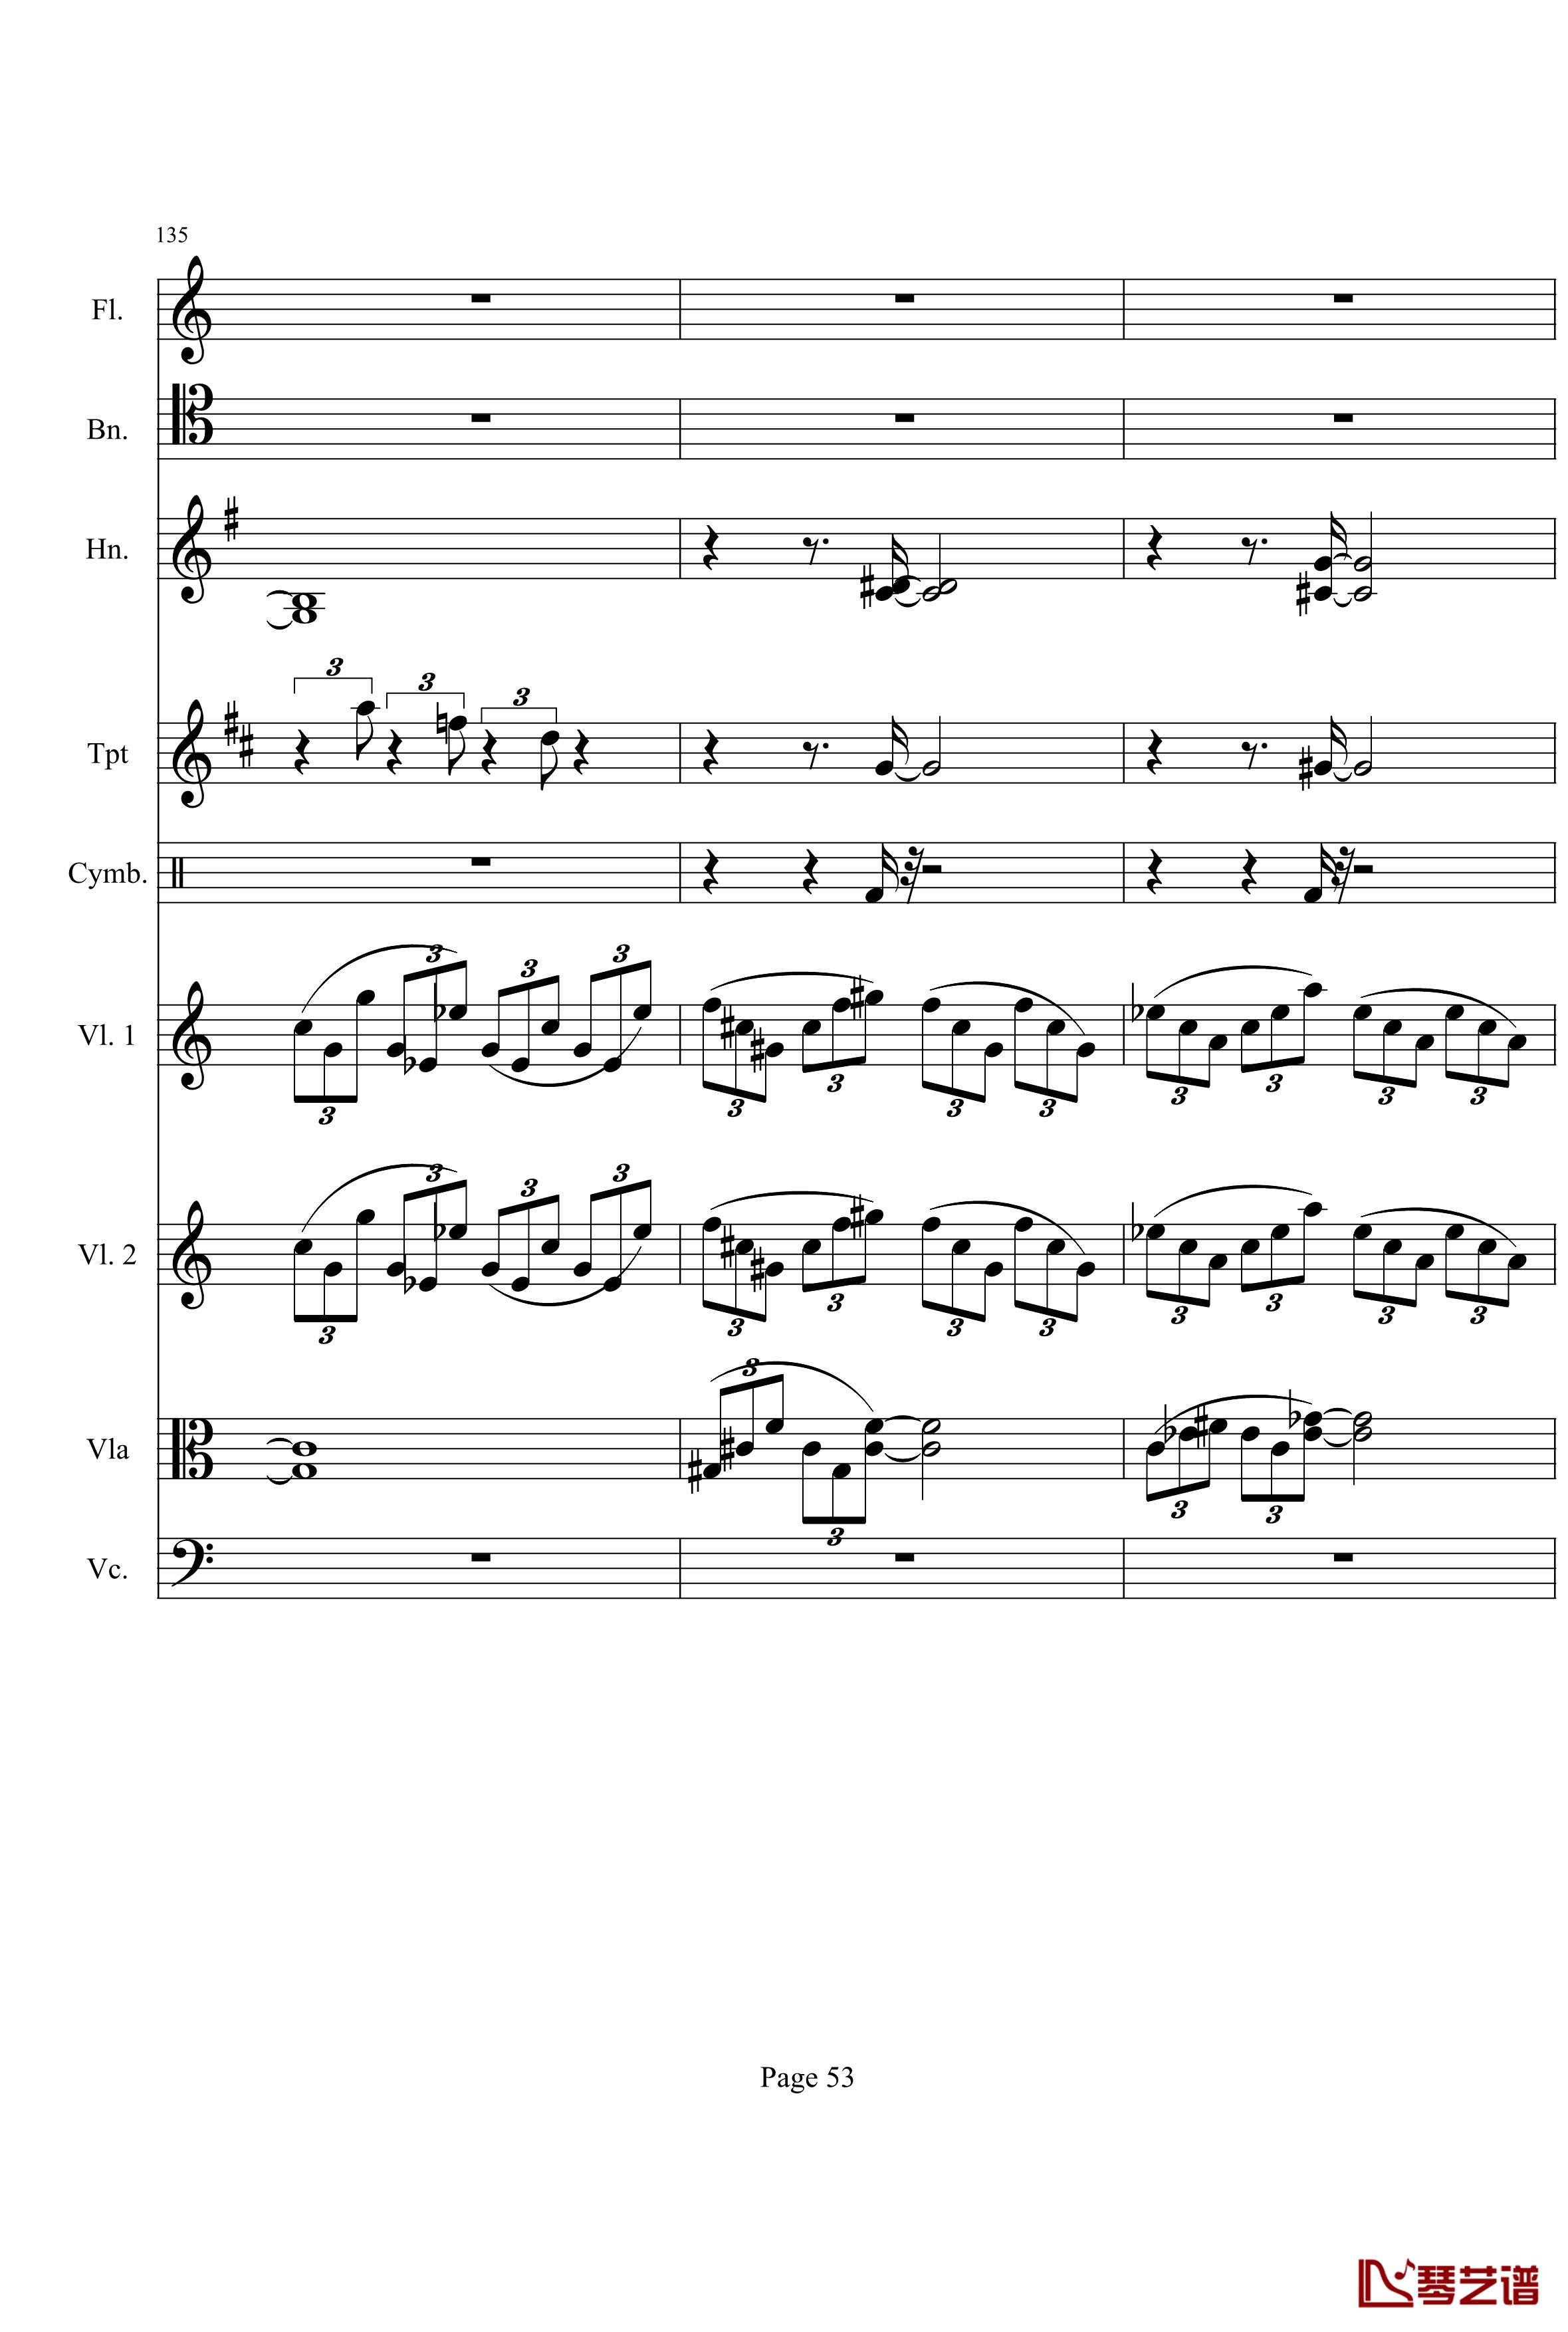 奏鸣曲之交响钢琴谱-第21-Ⅰ-贝多芬-beethoven53